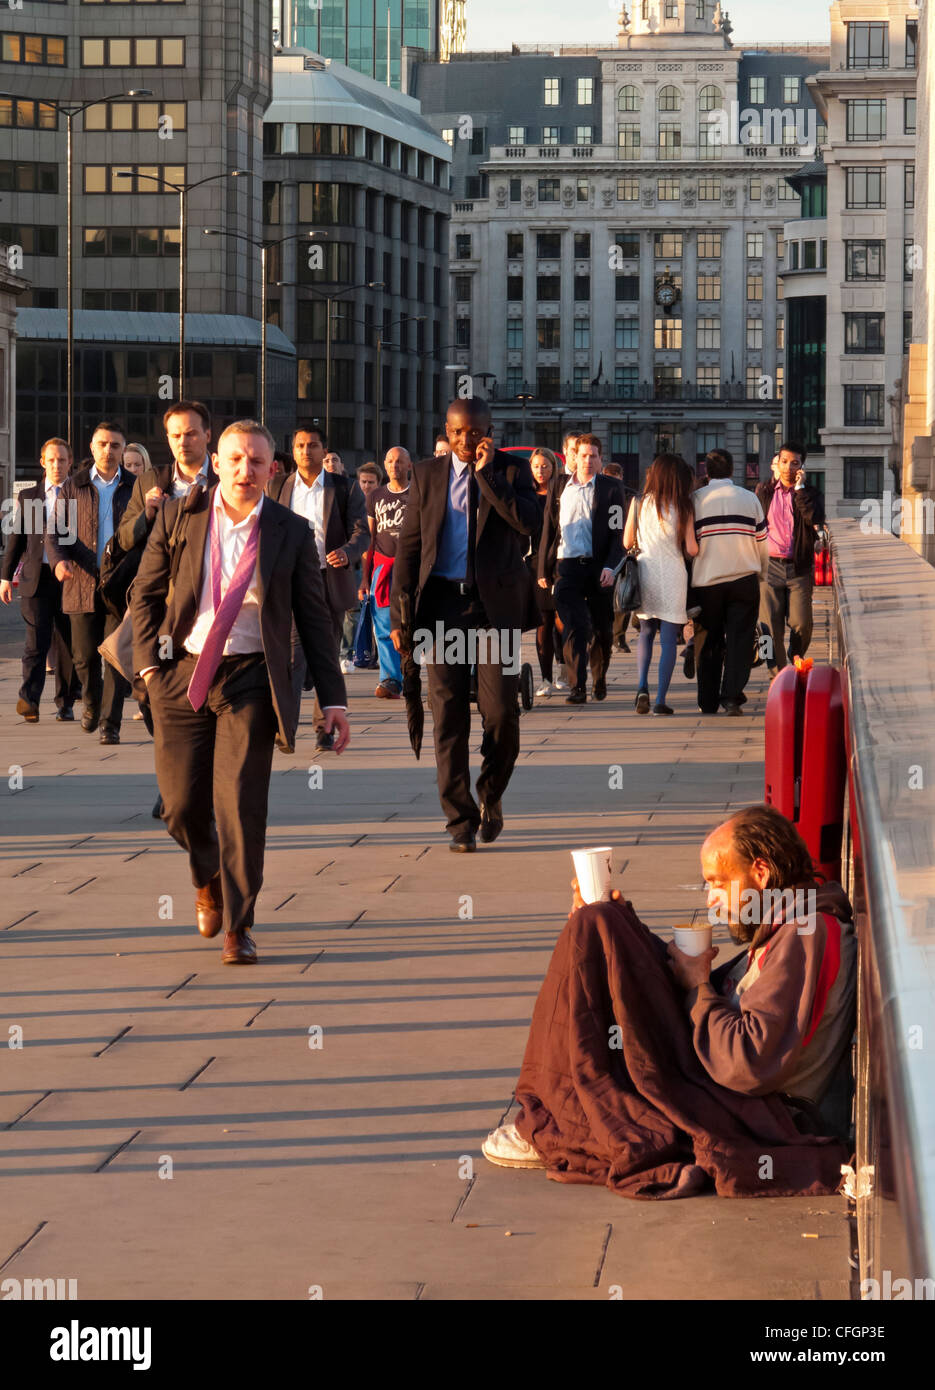 Les banlieusards de marcher à travers le pont de Londres dans le quartier financier de la ville de London England UK avec des sans-abri en premier plan Banque D'Images